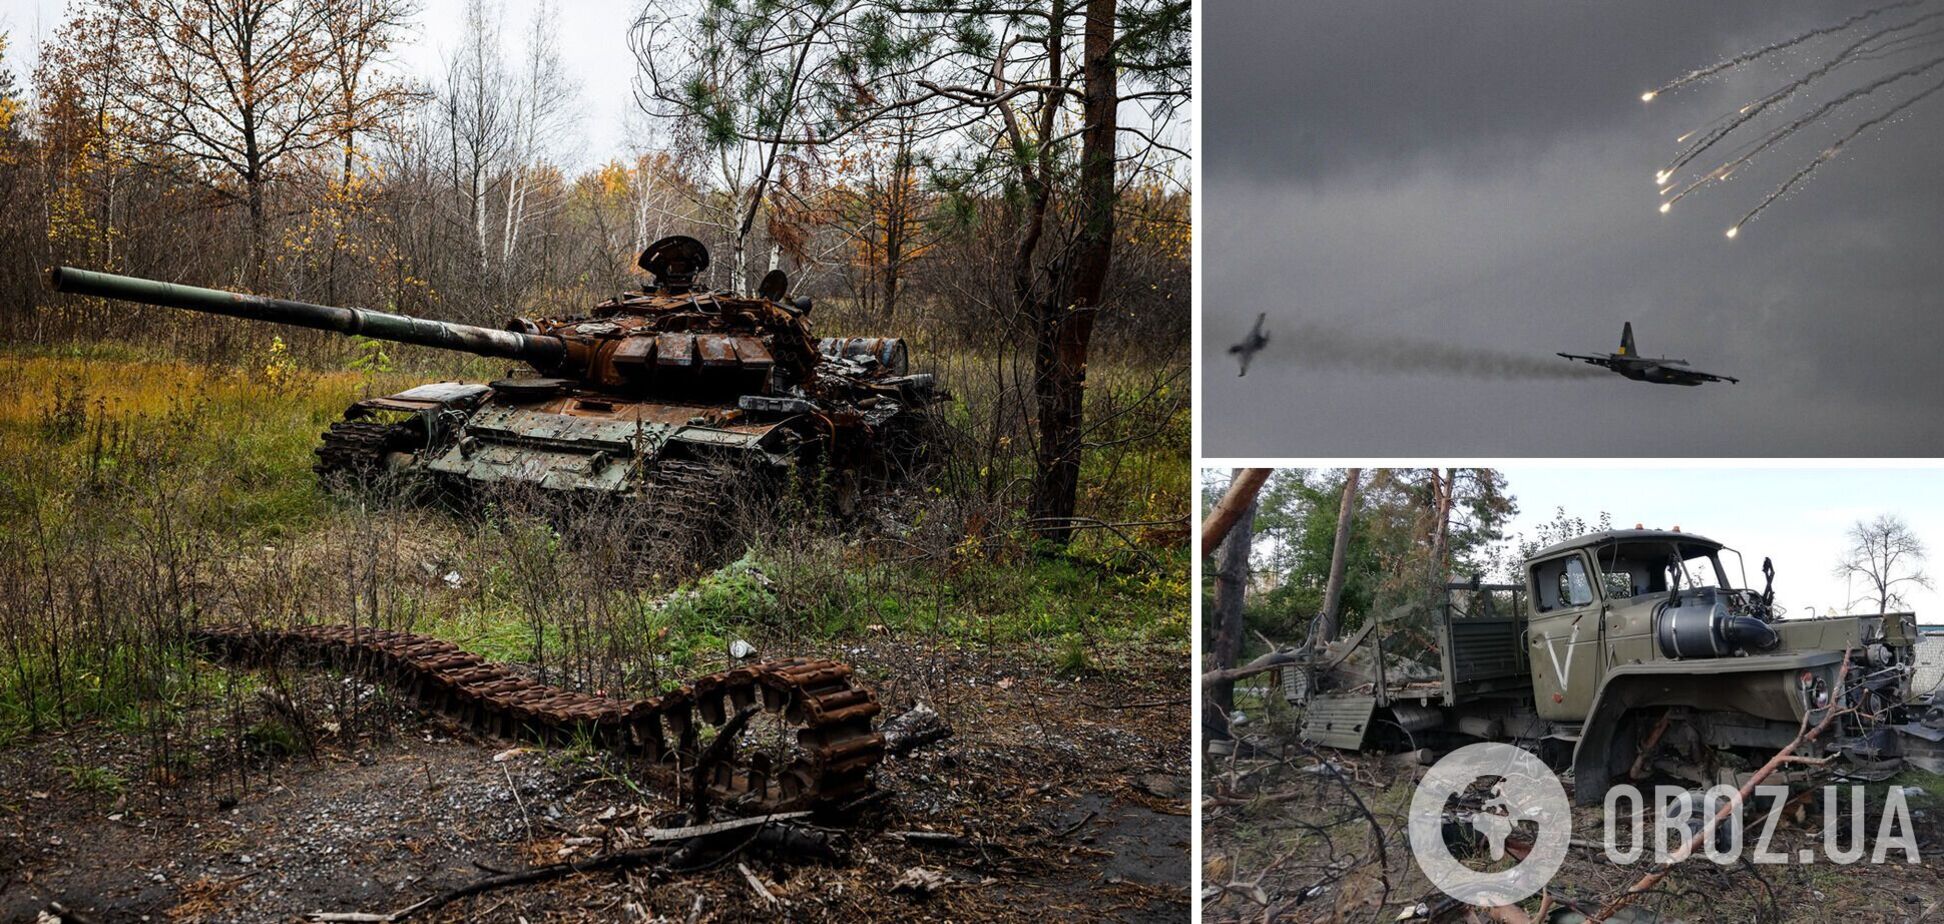 Потери РФ в войне против Украины превысили 78 тыс. человек: за сутки уничтожено 740 оккупантов и 16 БПЛА